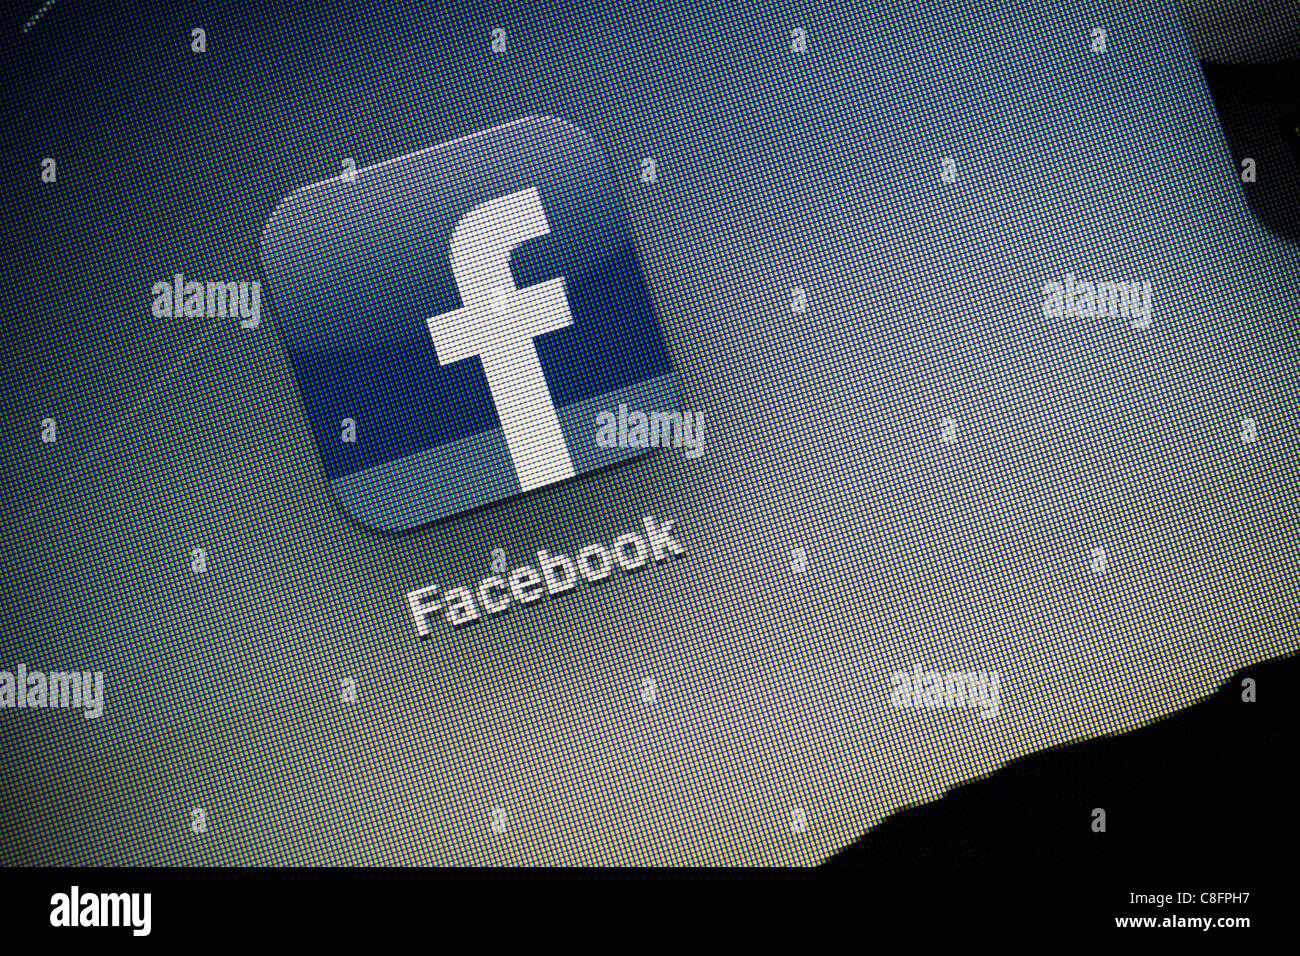 Plan Macro sur Facebook logo sur l'écran de l'Apple ipad2. Facebook est le plus grand et le plus utilisé des réseaux sociaux. Banque D'Images